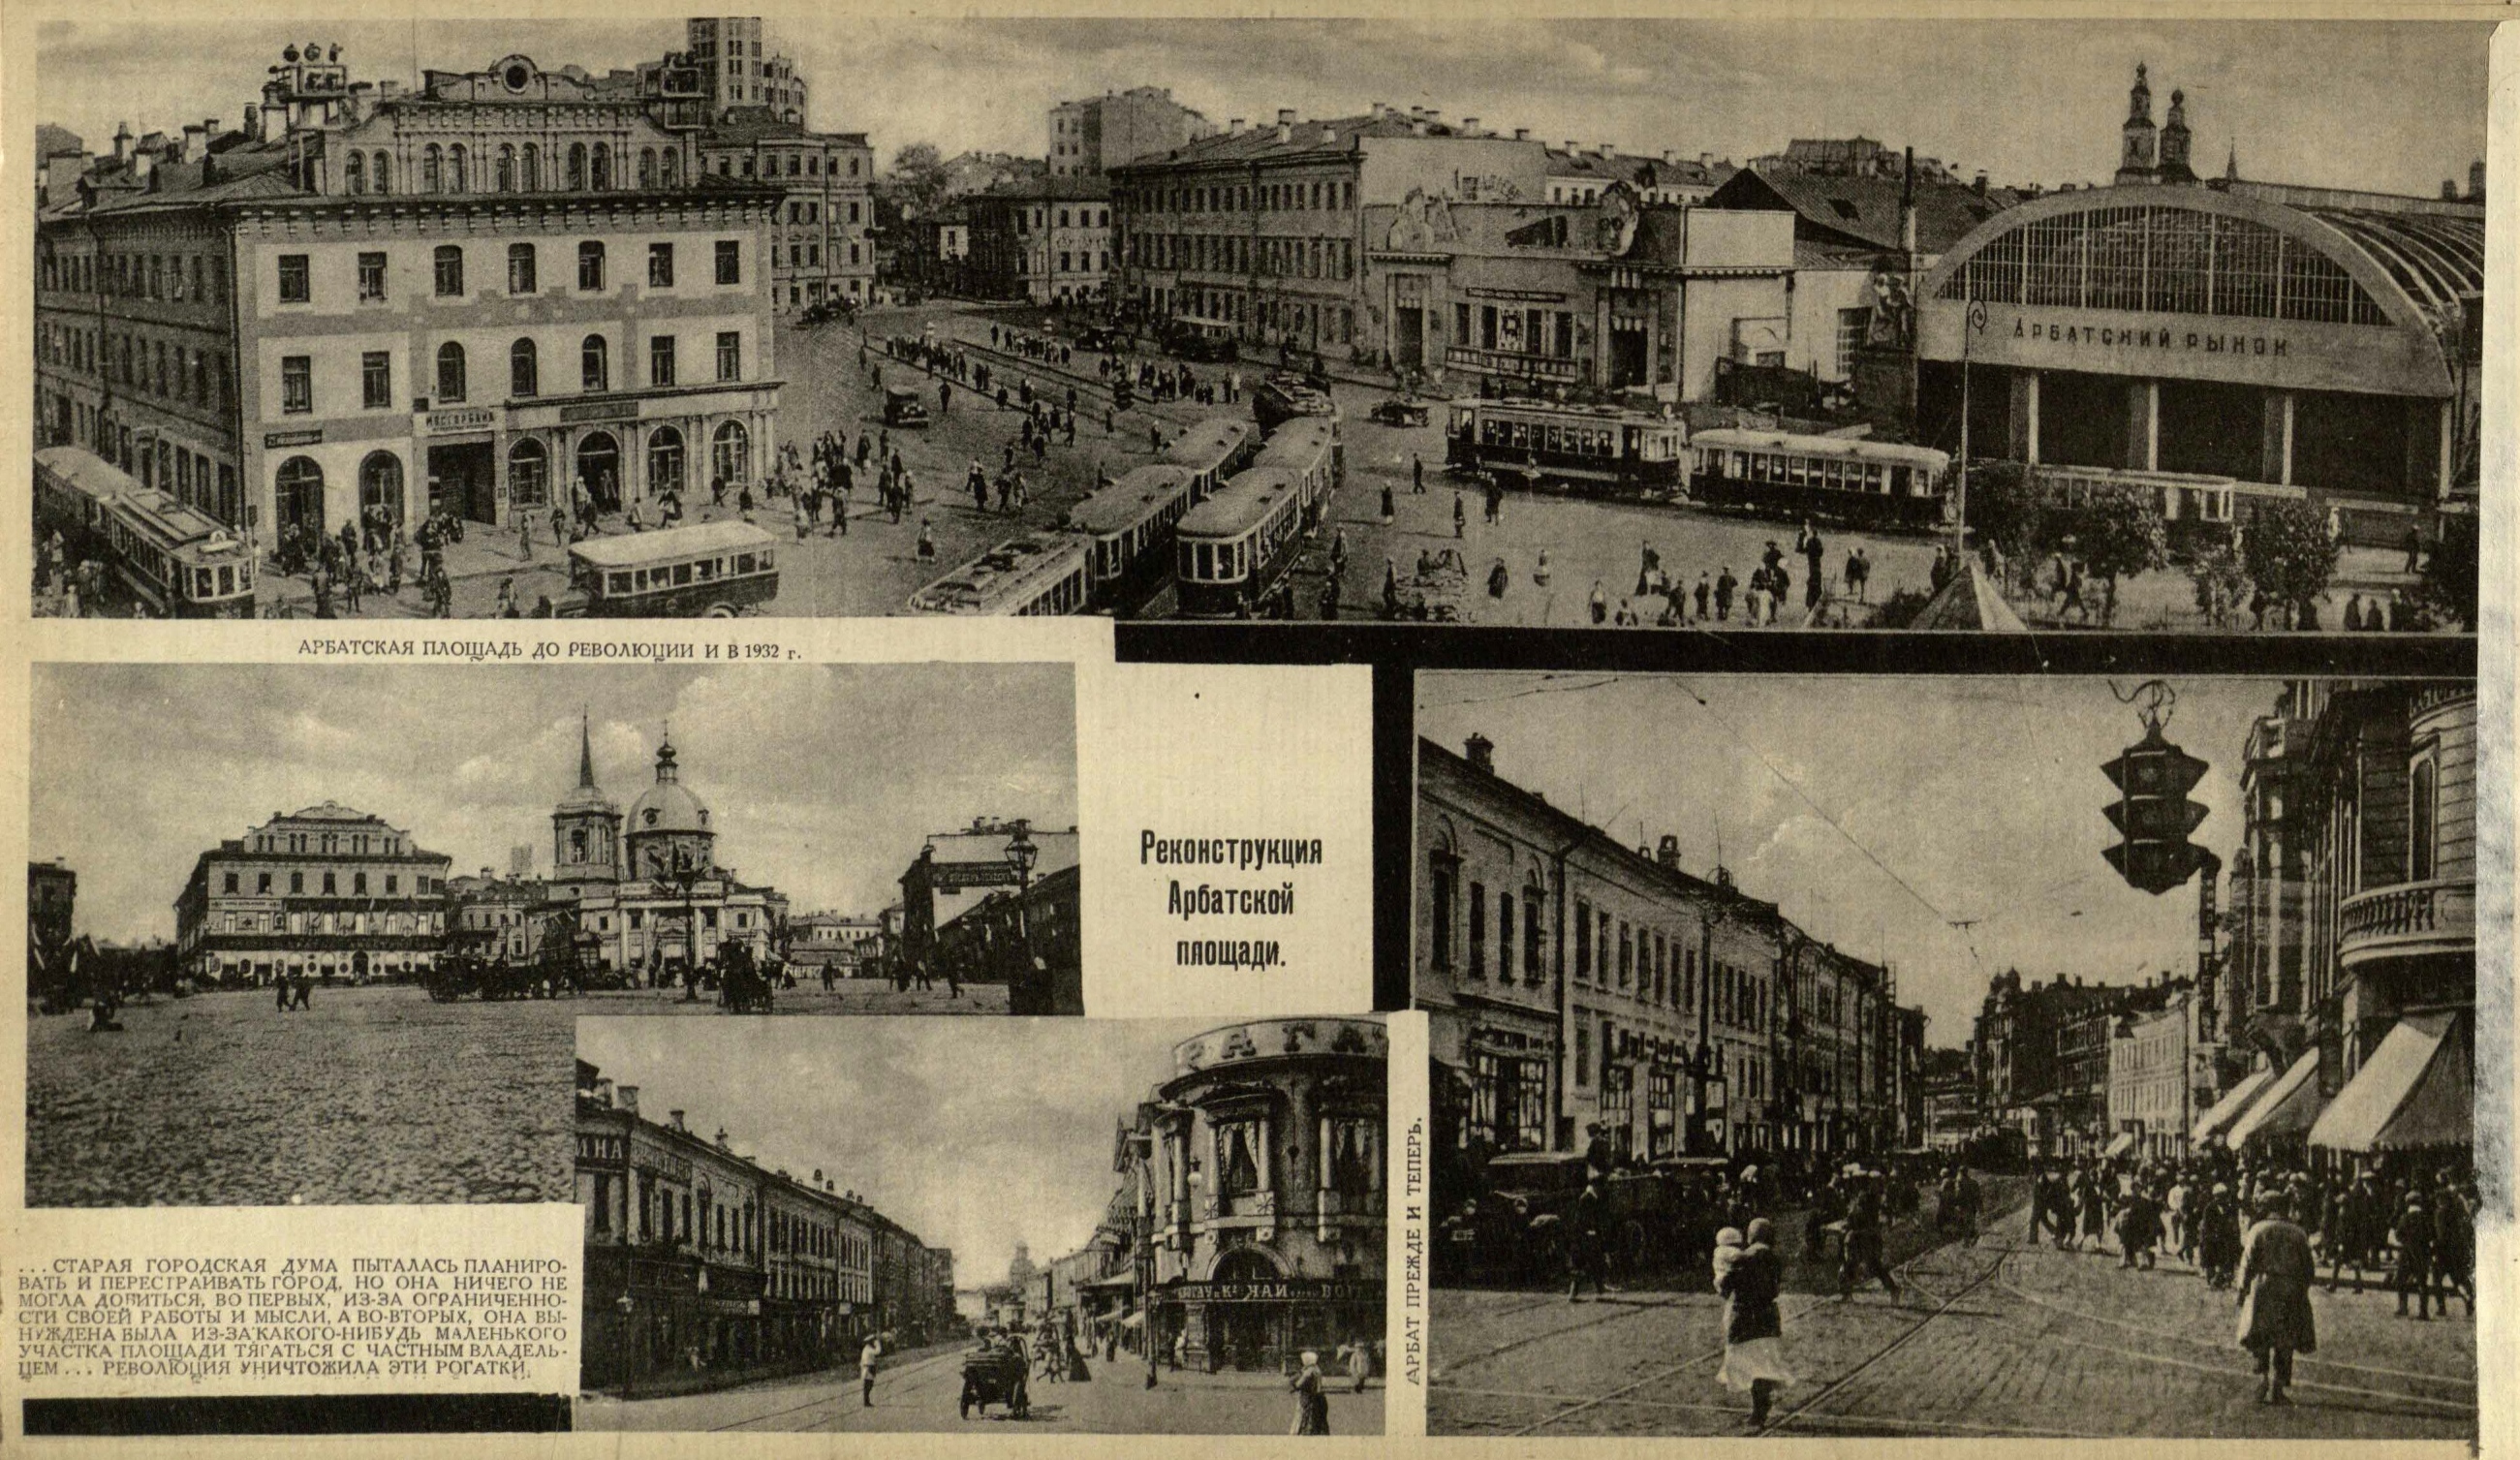 Название улиц до революции и после революции. Арбатская площадь 1930. Арбат Москва до революции. Арбатская площадь 1950. Арбат 18 век.